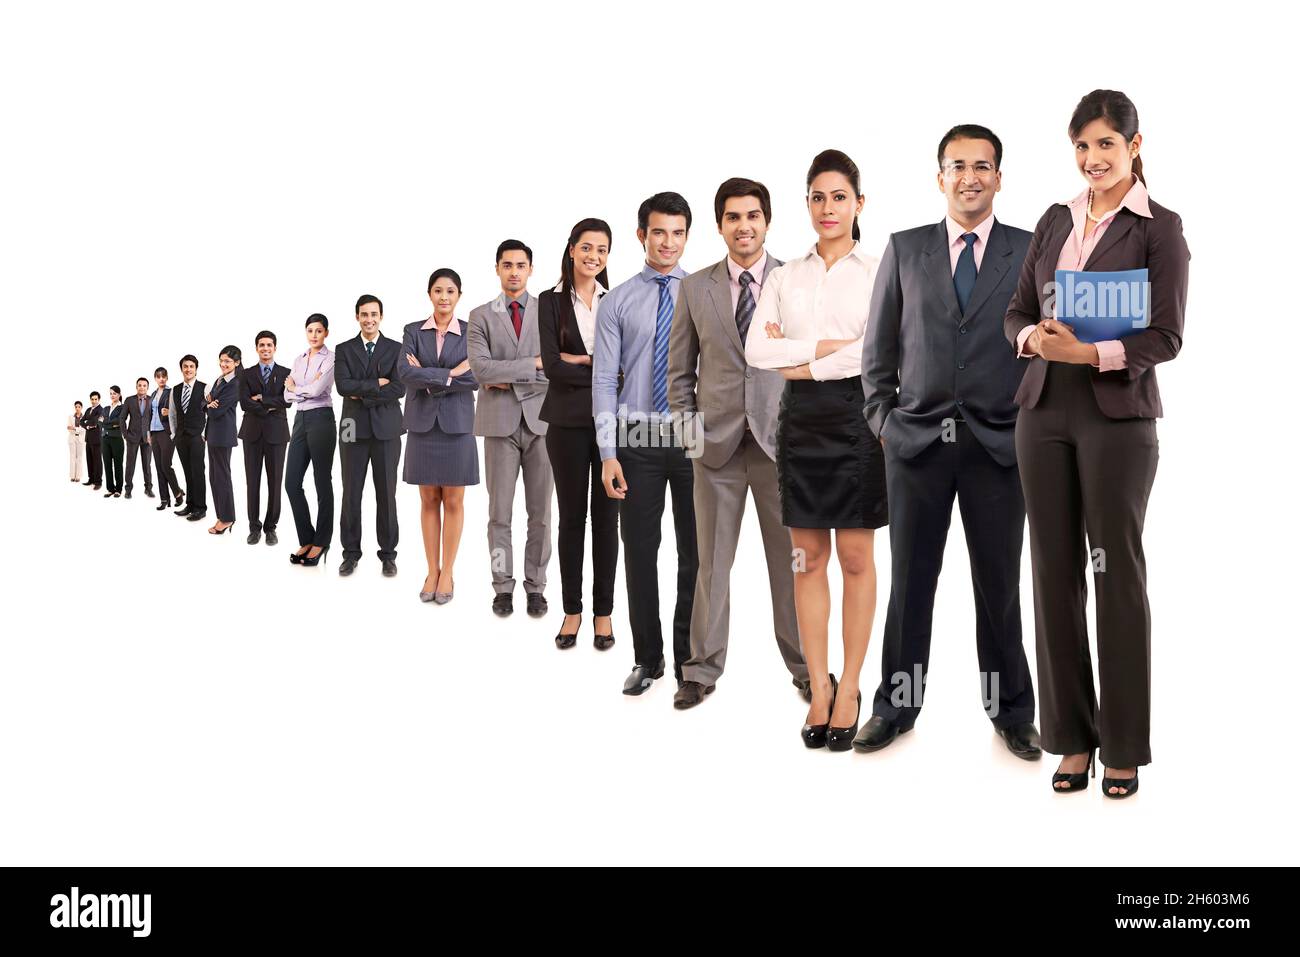 Ein Team von Unternehmensmitarbeitern, das in formeller Kleidung in einer Reihe steht. Stockfoto